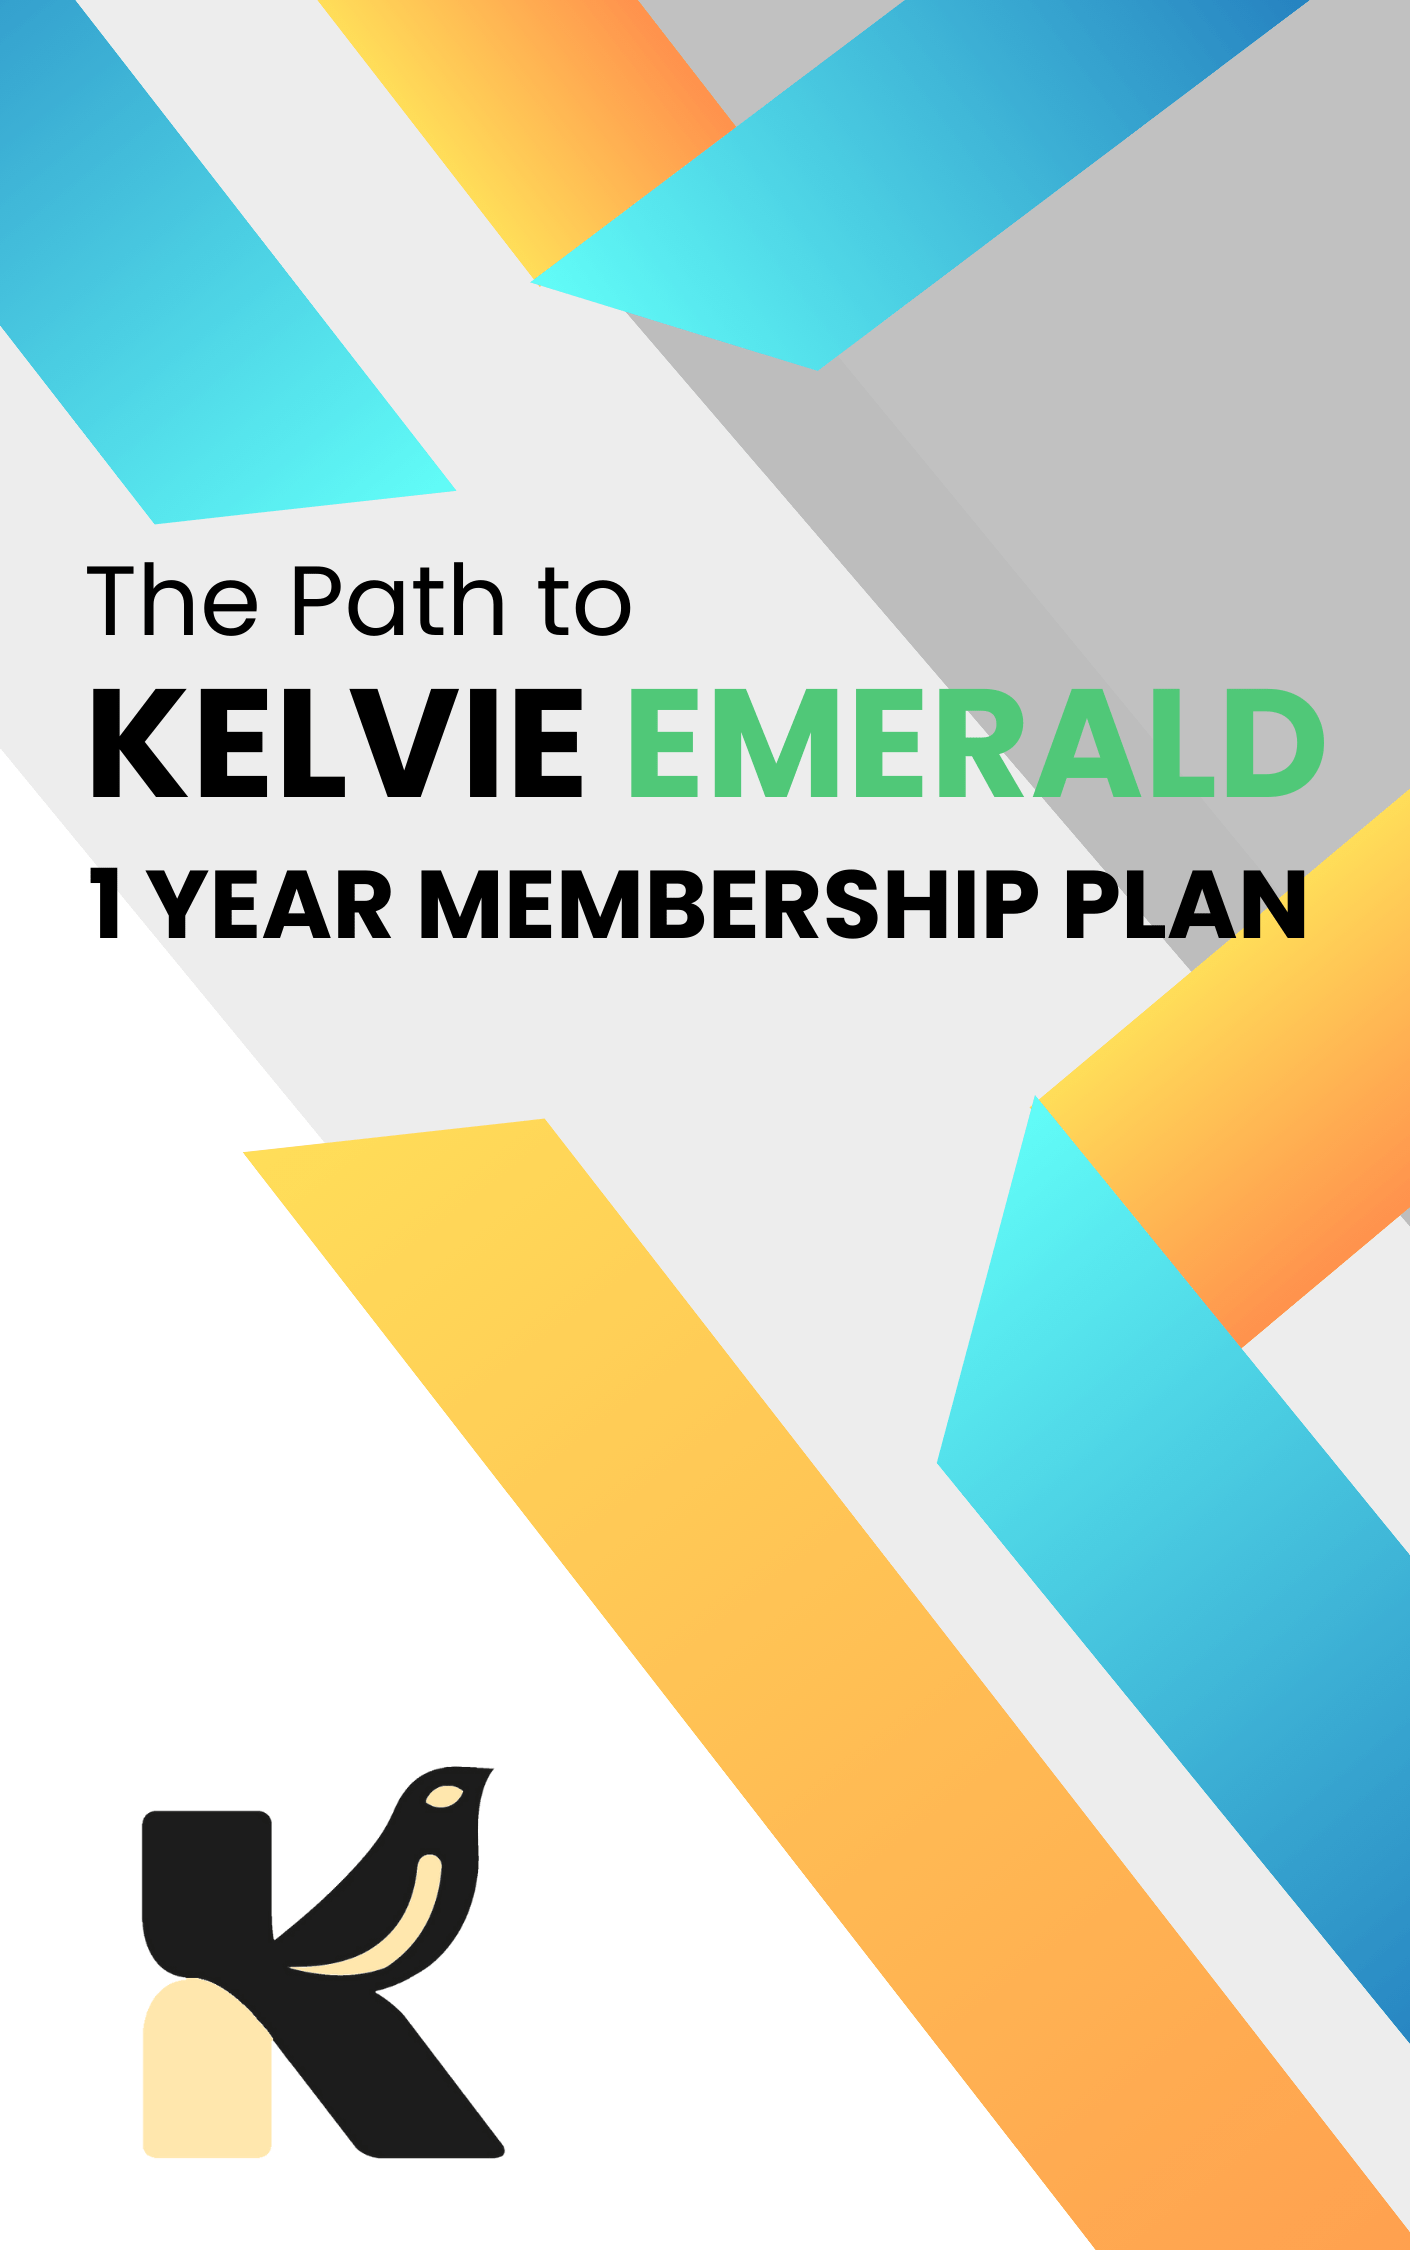 KELVIE EMERALD - 1 Year Membership